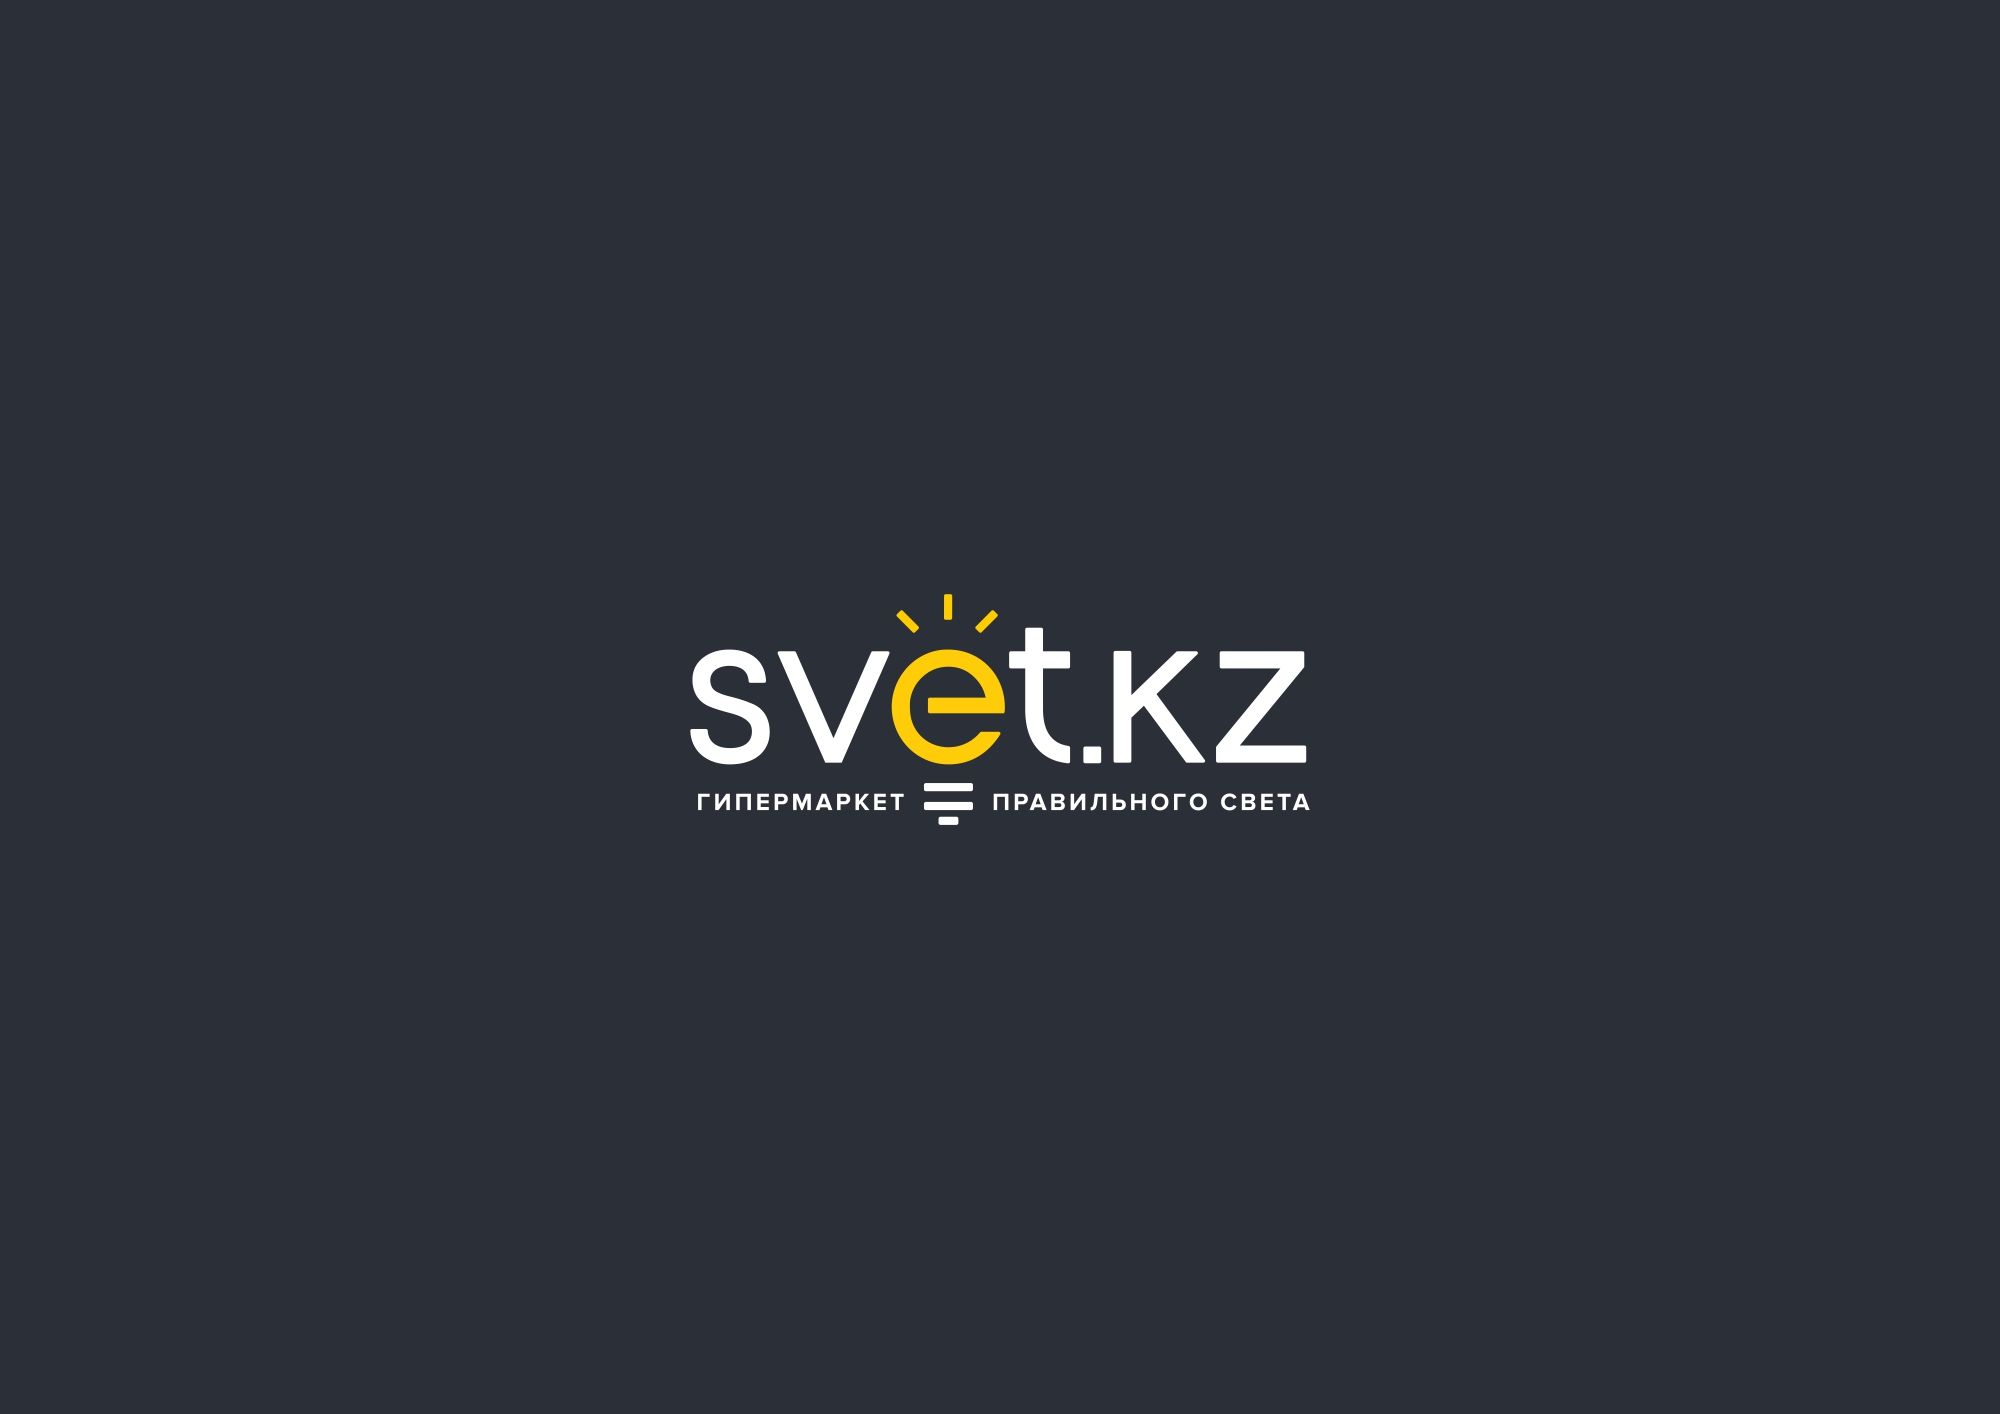 Лого и фирменный стиль для SVET.kz - дизайнер Klaus